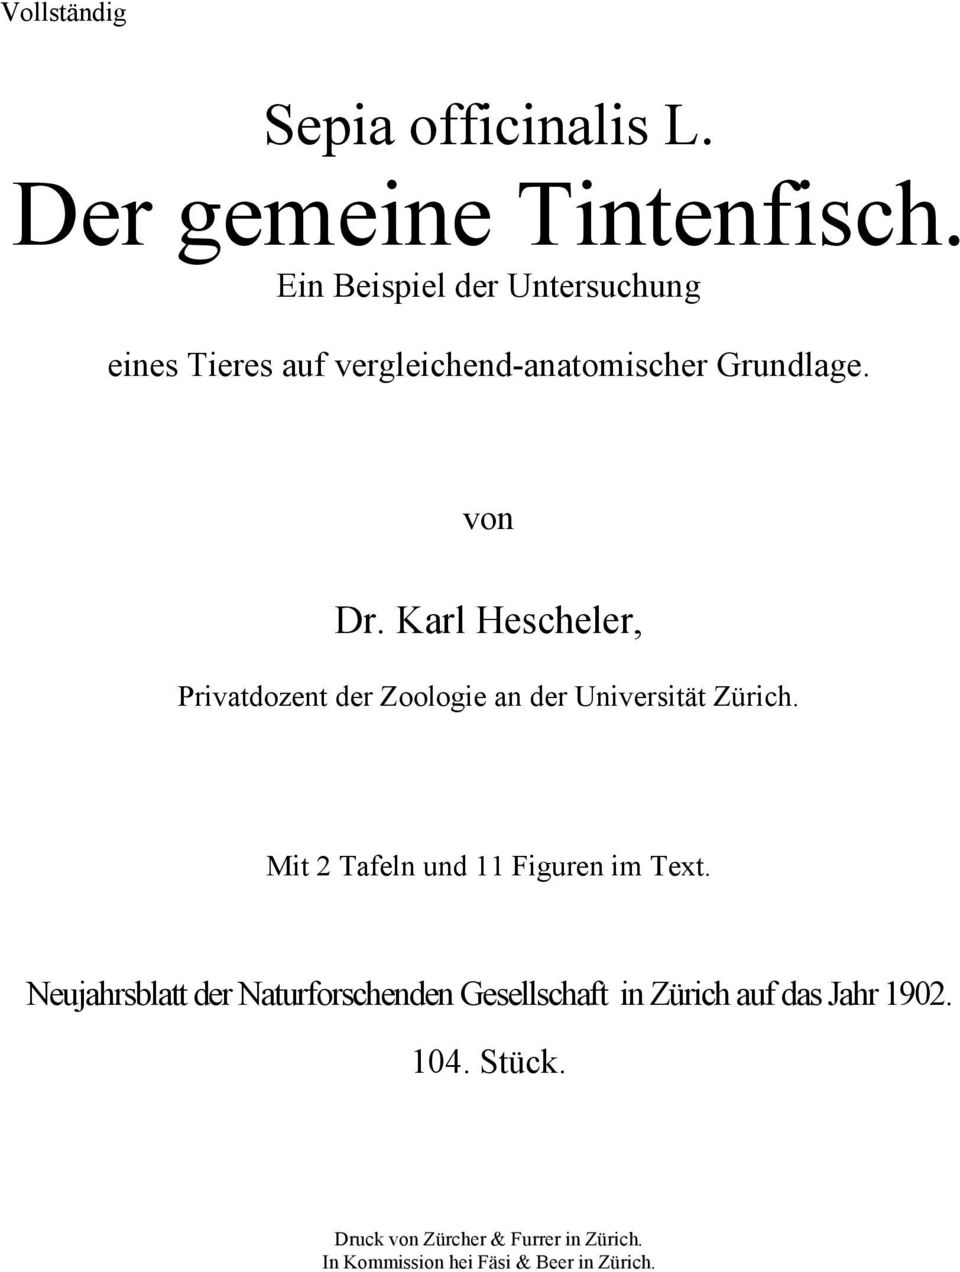 Karl Hescheler, Privatdozent der Zoologie an der Universität Zürich. Mit 2 Tafeln und 11 Figuren im Text.